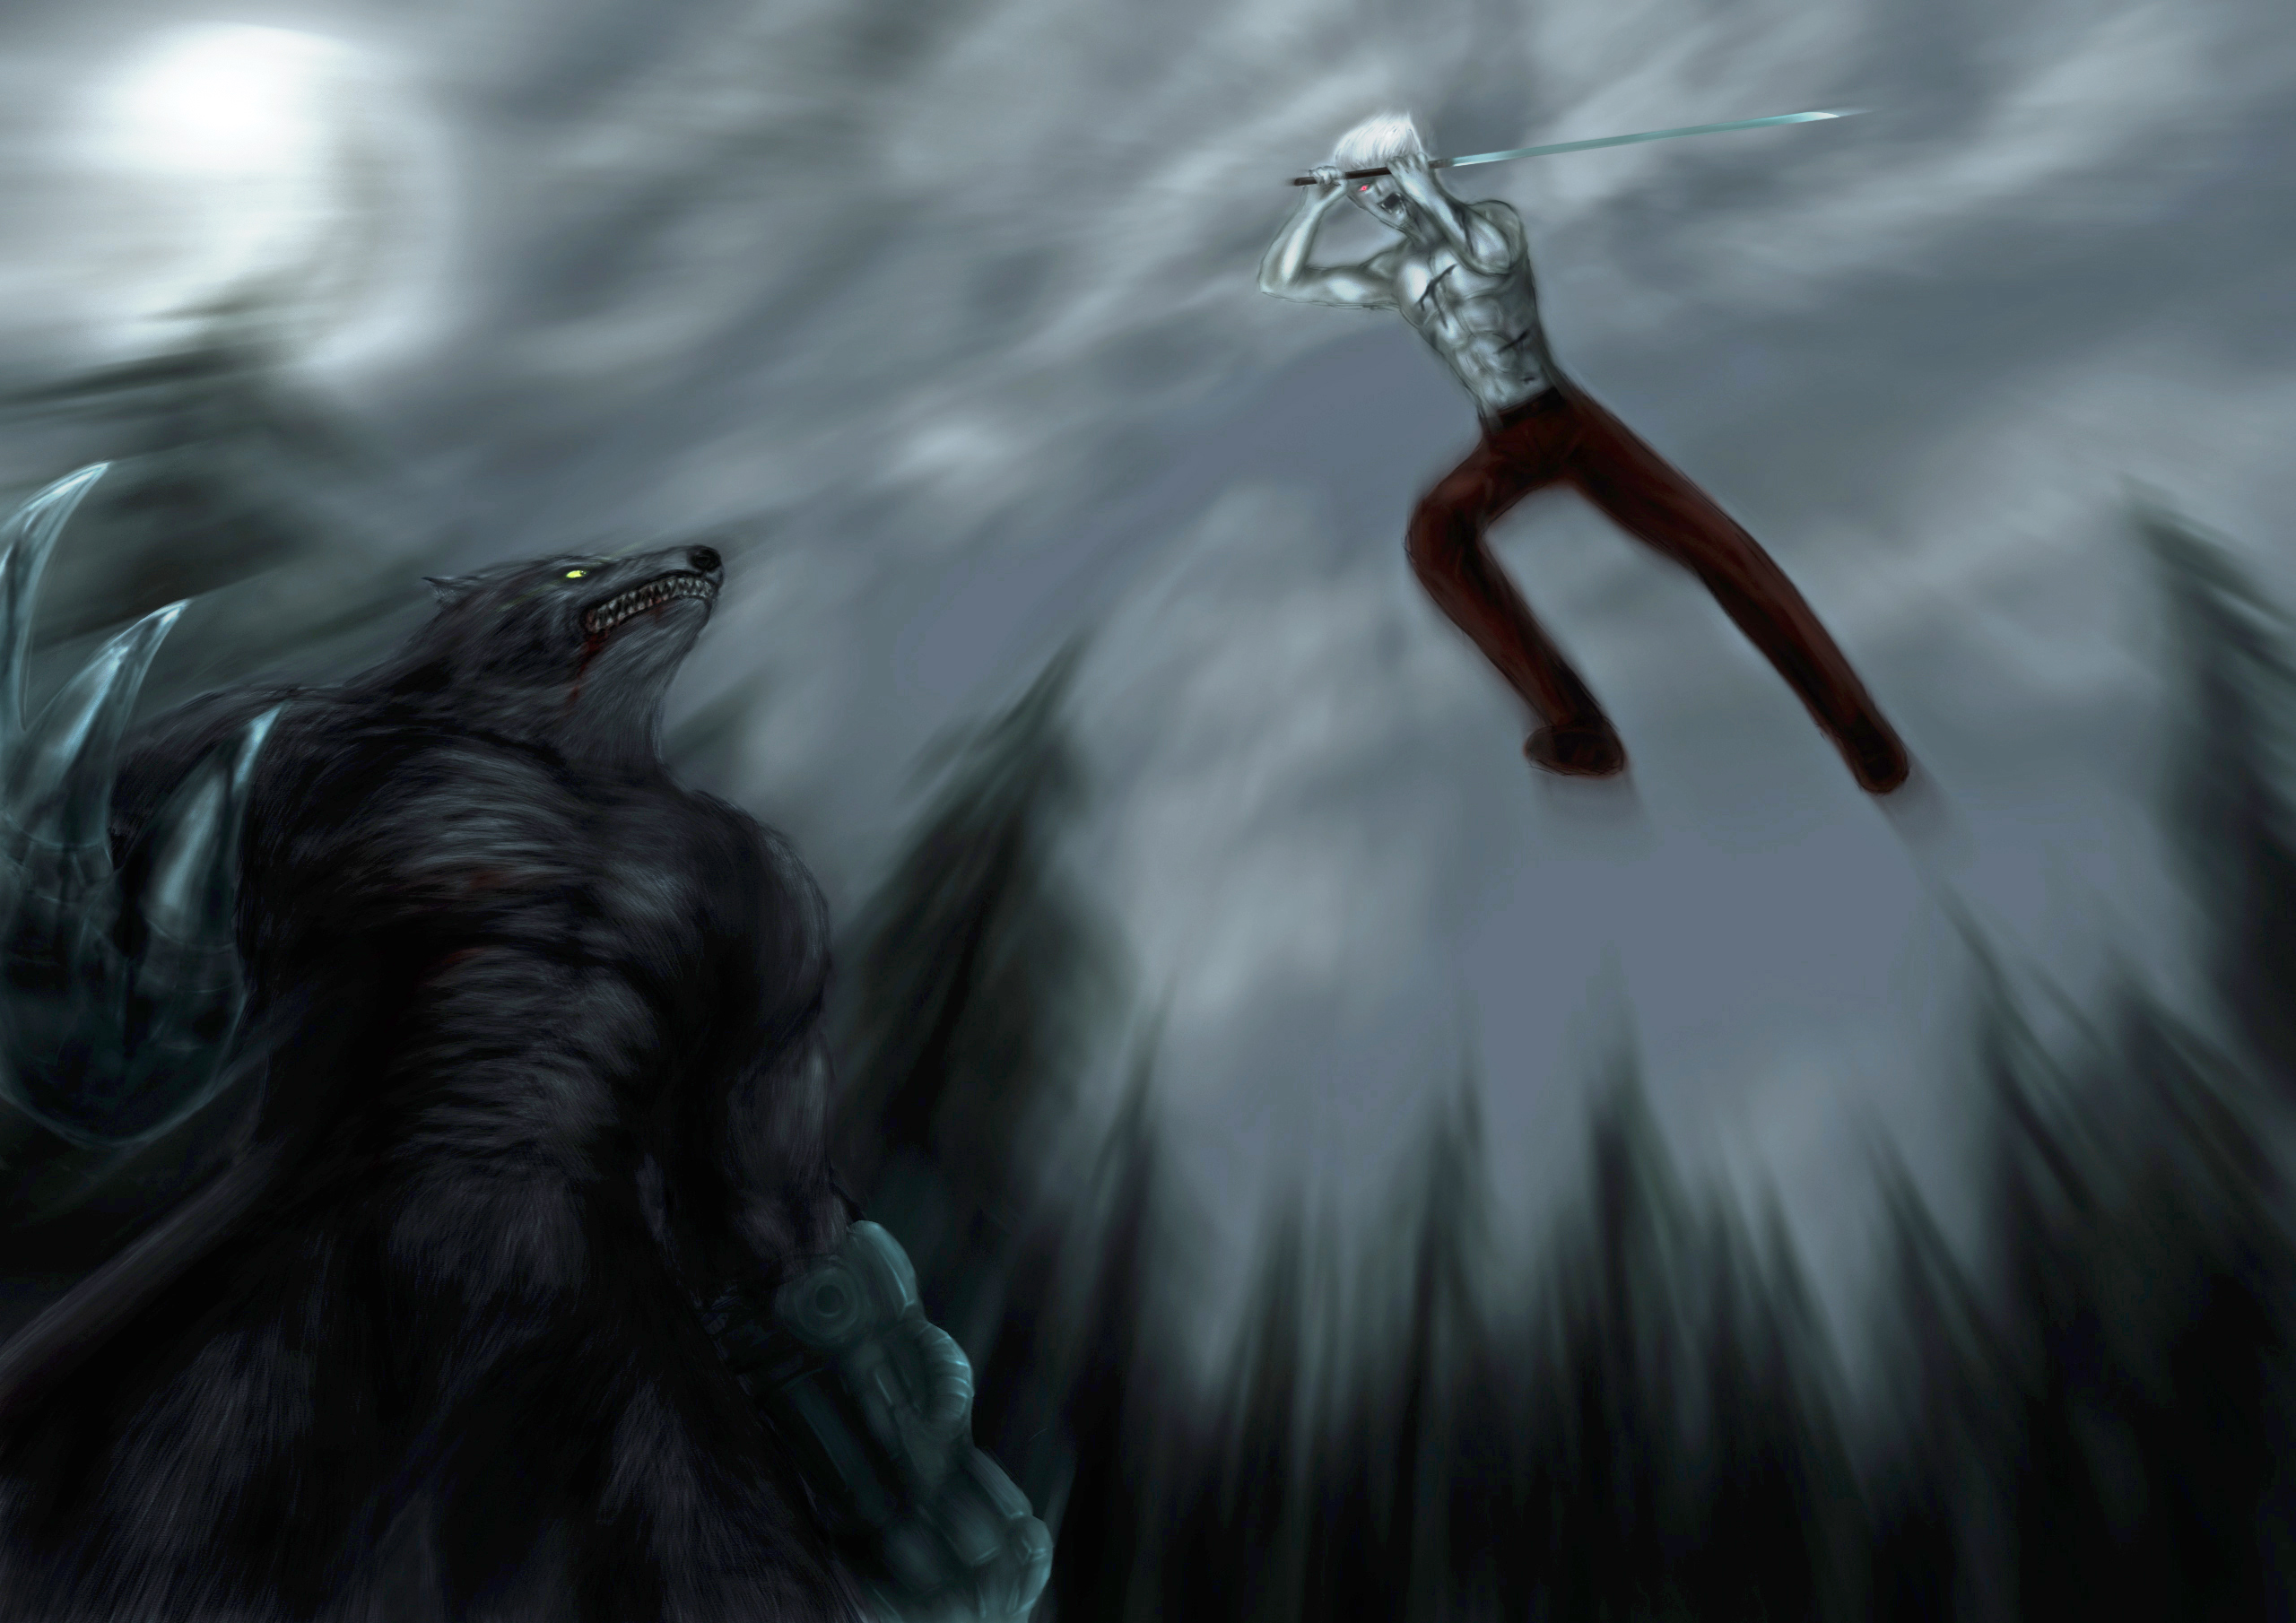 AI Art Generator: Vampire kurapika and werewolf leorio